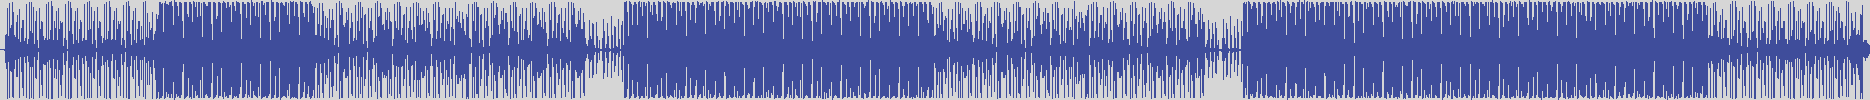 nf_boyz_records [NFY013] David Cuccumini Mc - Calla [Original Mix] audio wave form